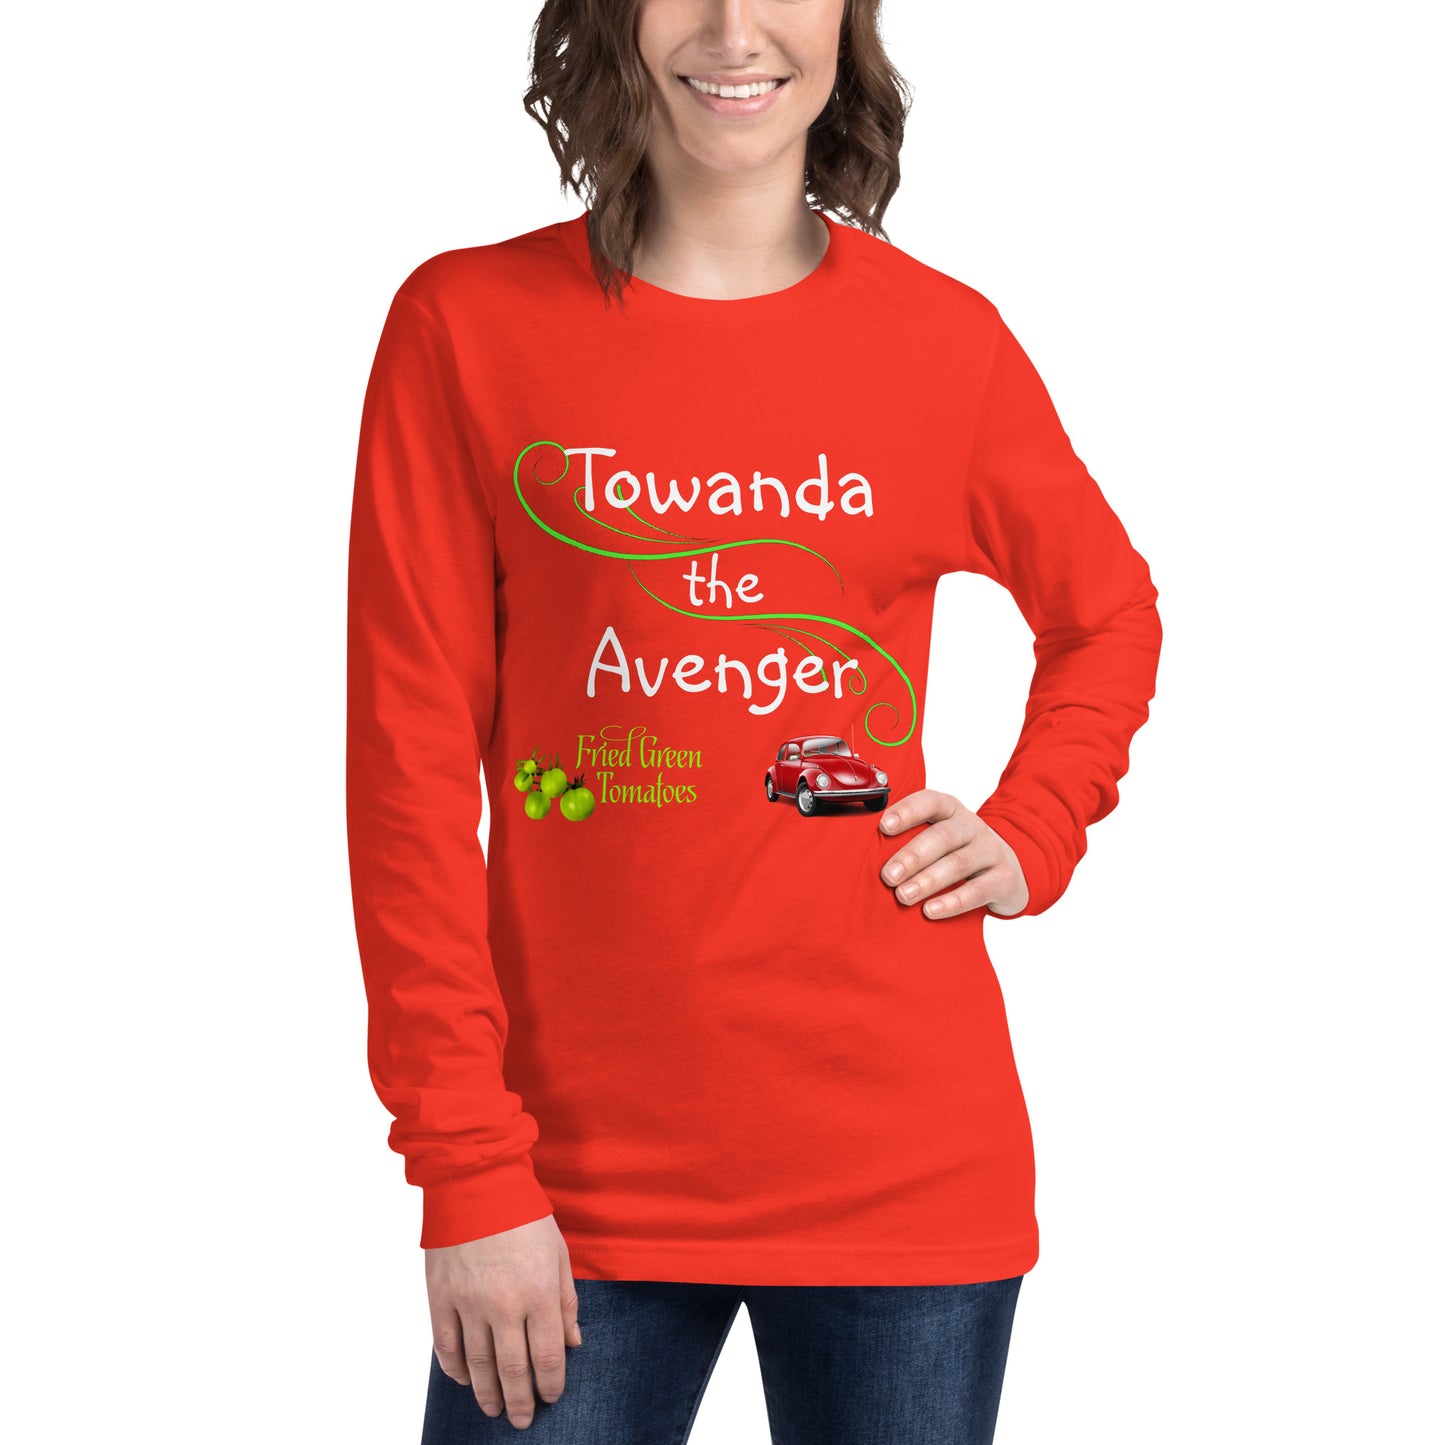 Towanda the Avenger Long Sleeve Tee